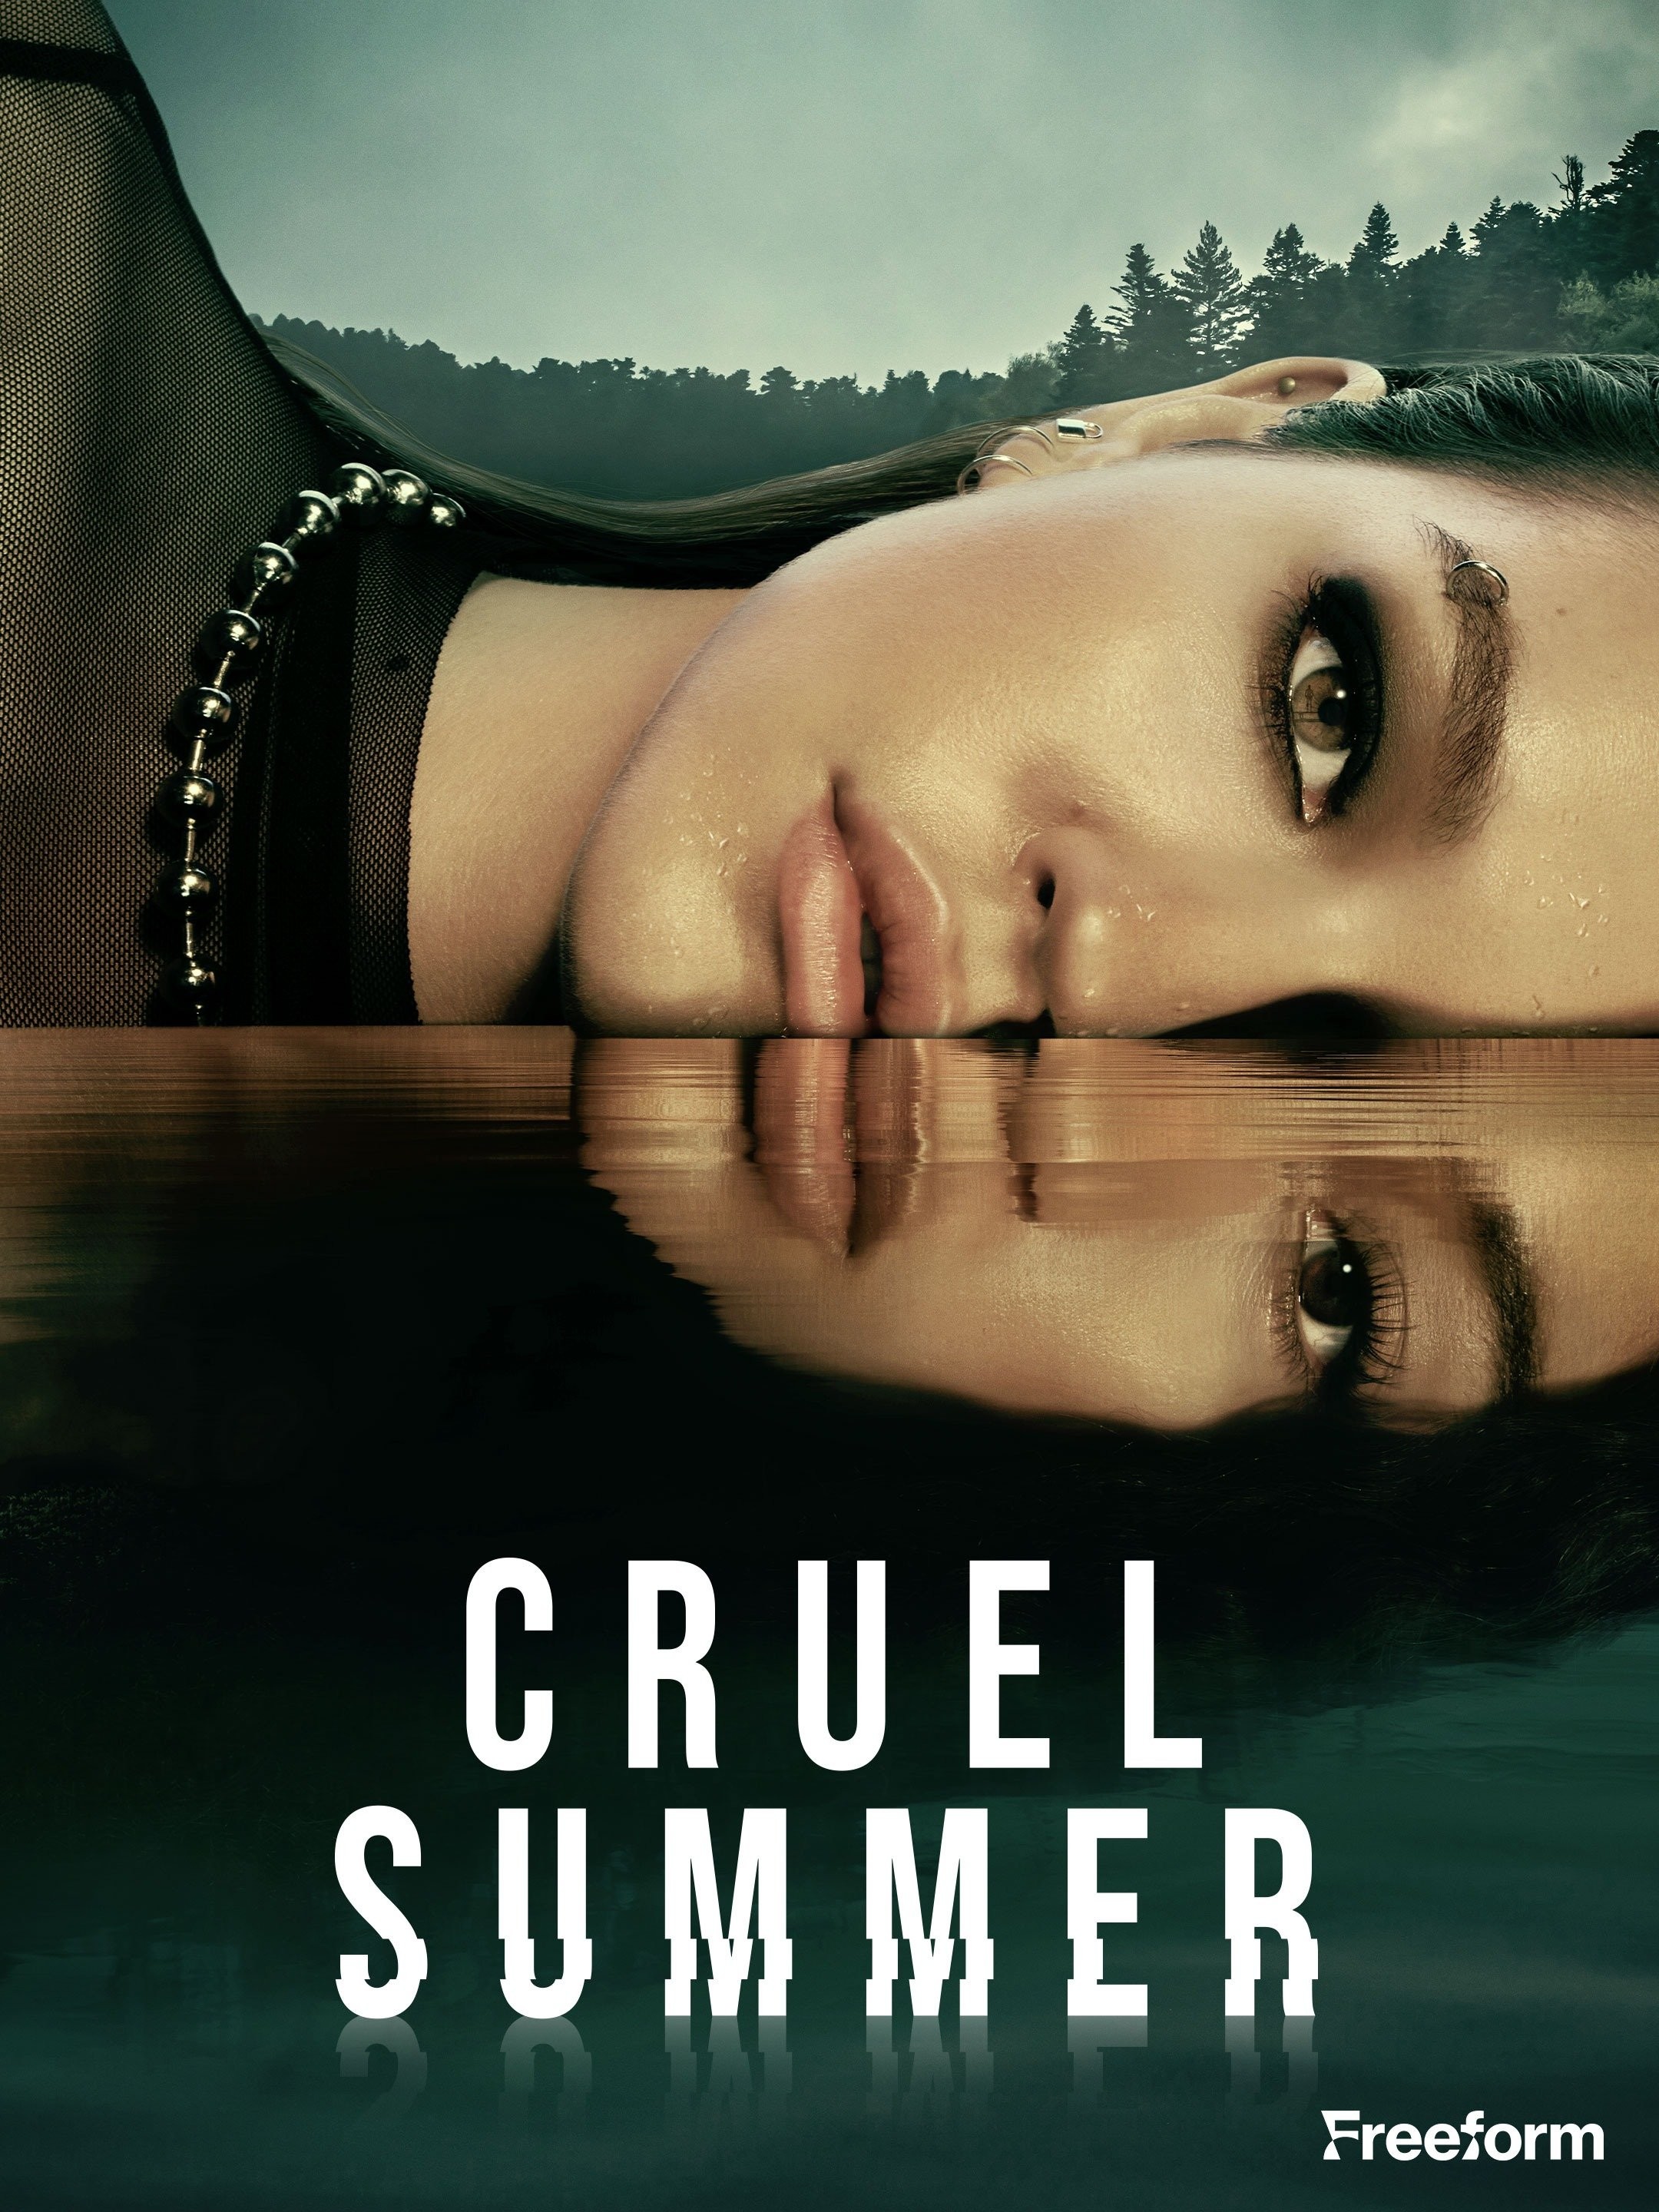 Preview — Cruel Summer Season 2 Episode 10: Endgame